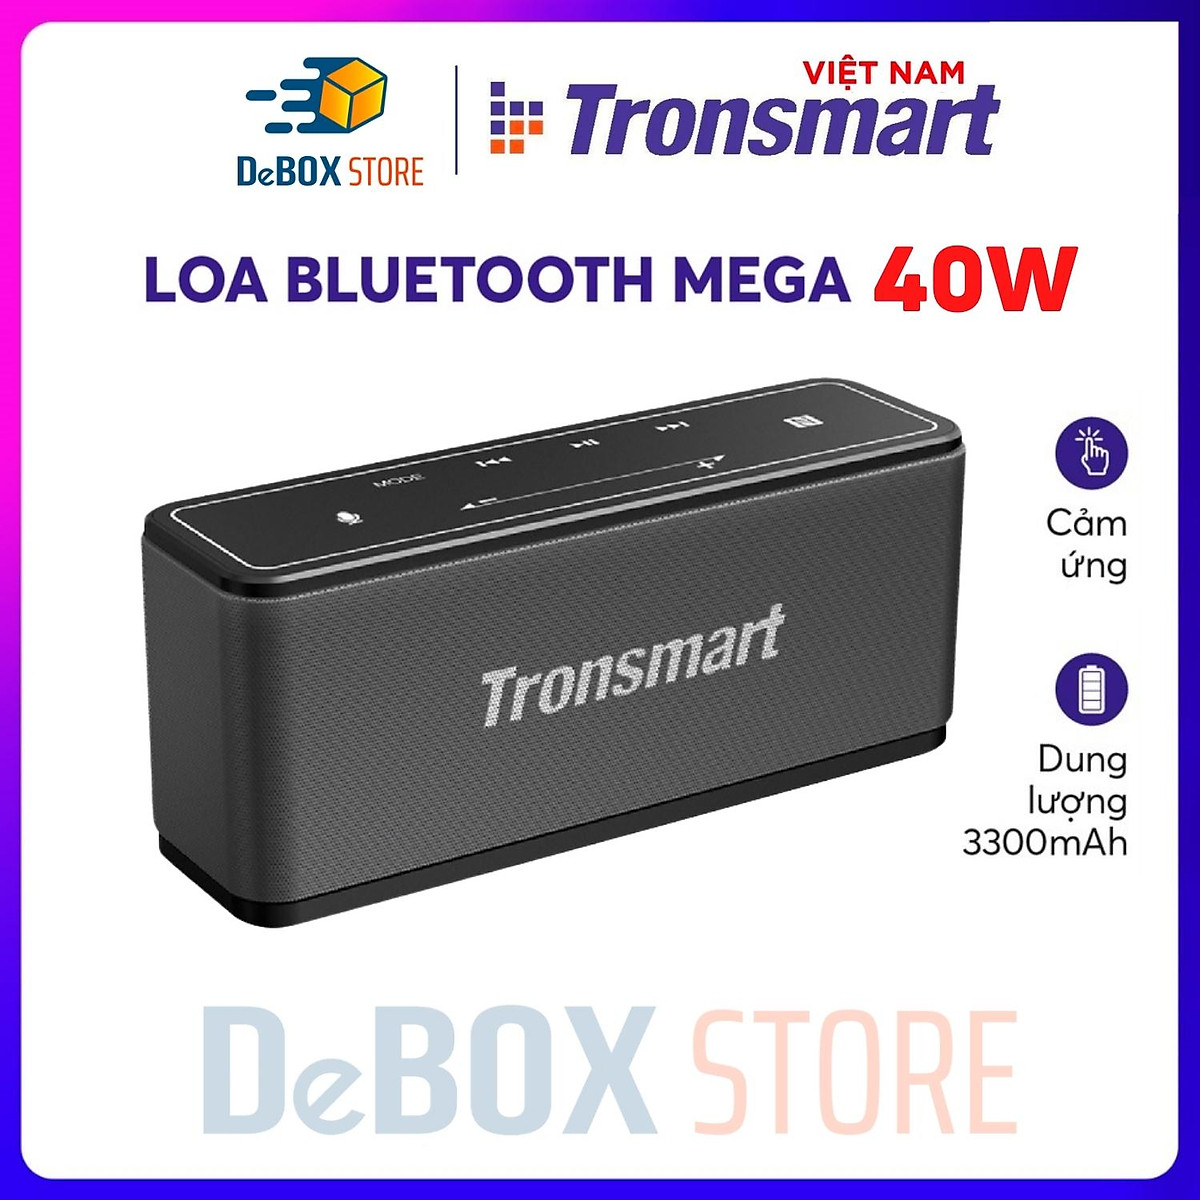 Loa Bluetooth Không Dây Tronsmart Element MEGA 40W v5.0 Hỗ trợ TWS và NFC ghép đôi 2 loa - Hàng Chính hãng